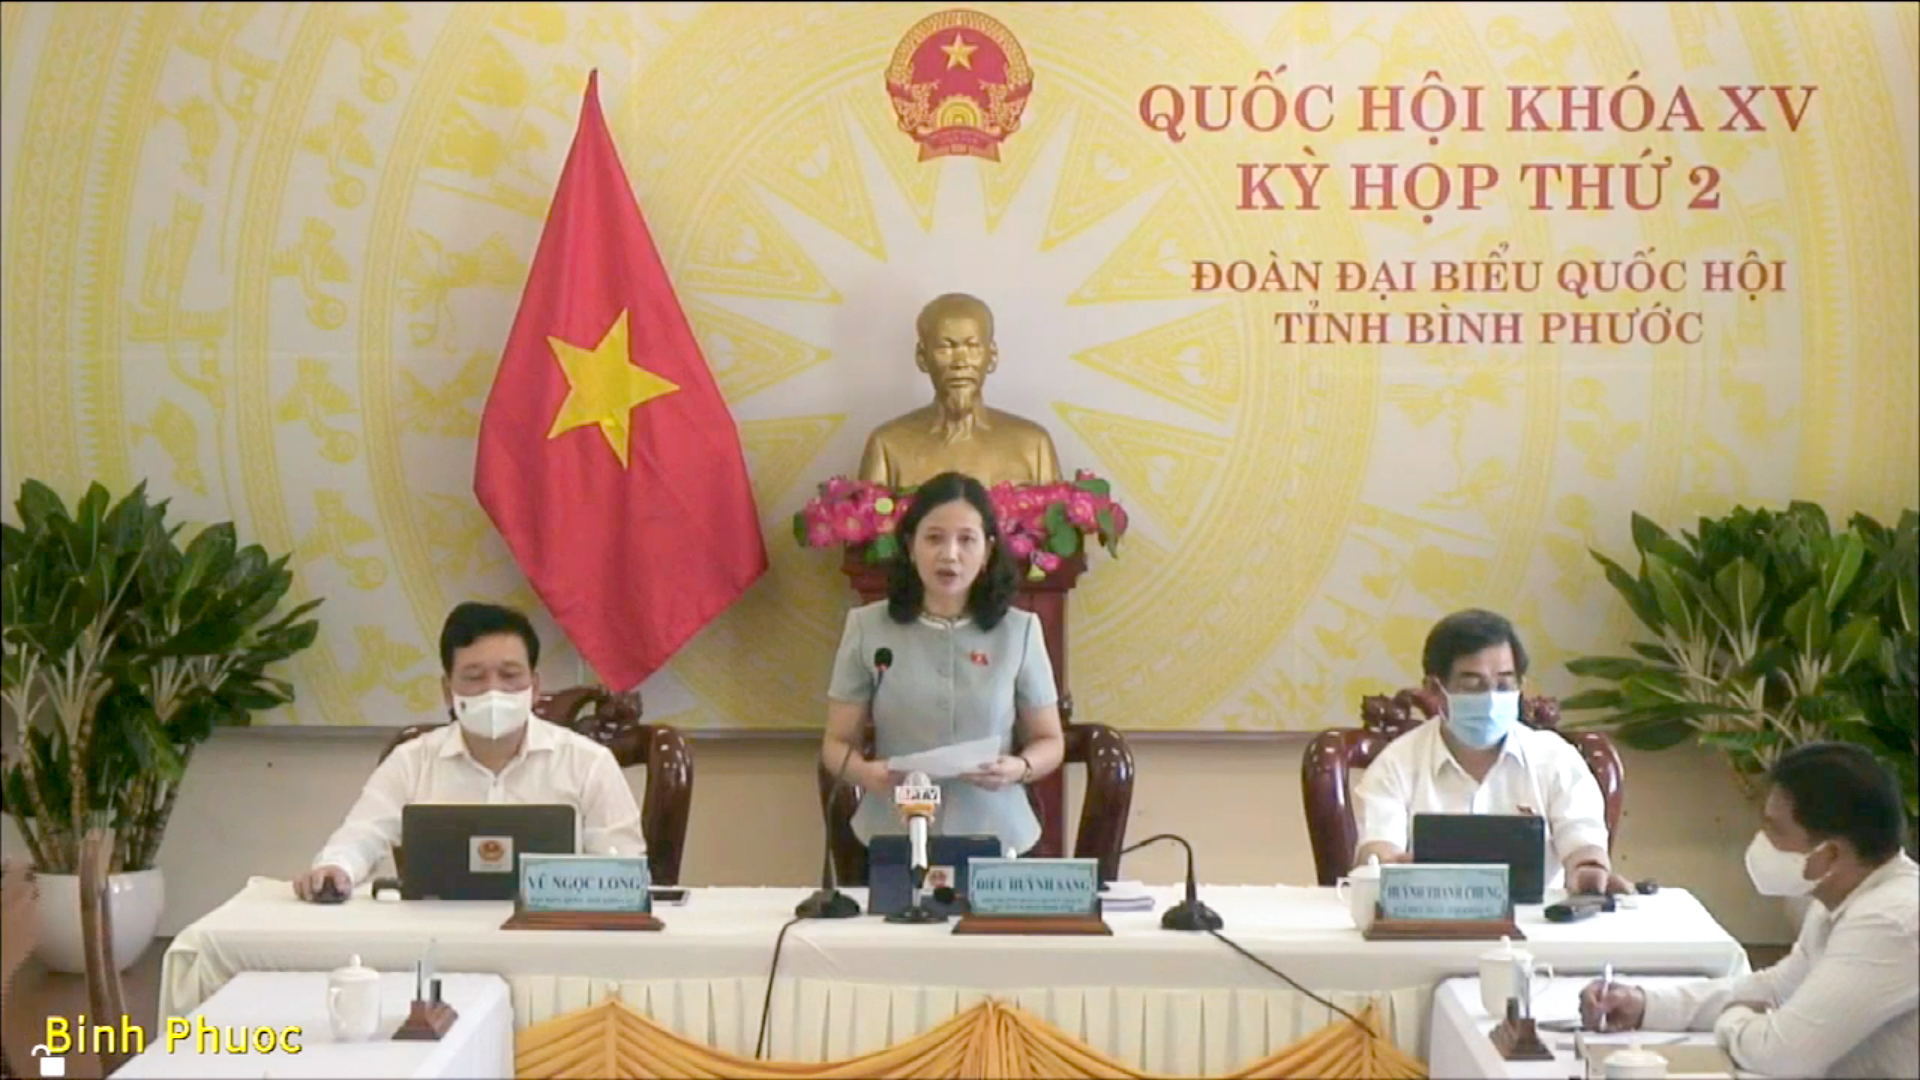 Đại biểu Điểu Huỳnh Sang- Đoàn ĐBQH tỉnh Bình Phước phát biểu từ điểm cầu trực tuyến